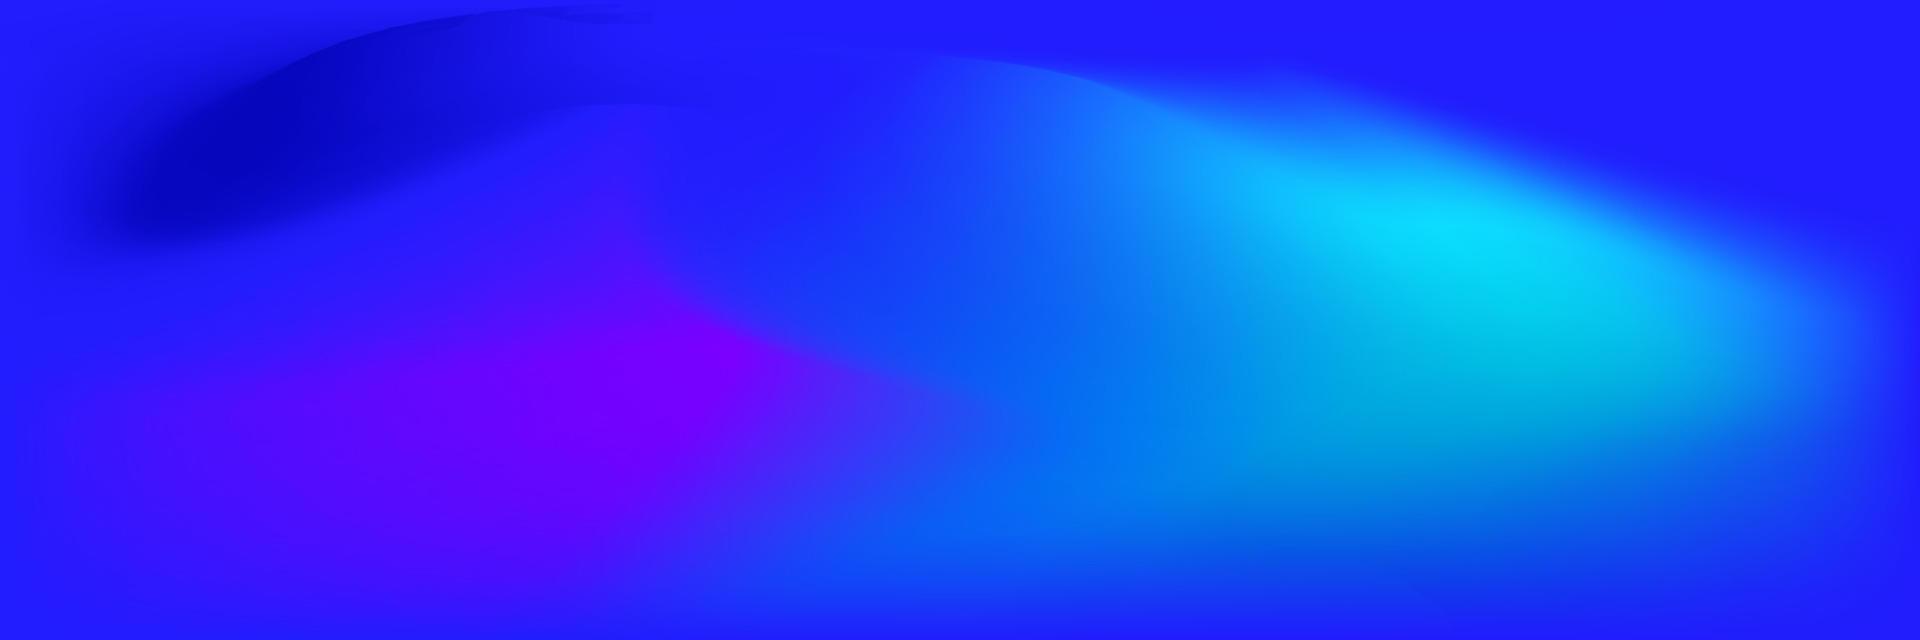 vibrante antecedentes en azul color degradado vector